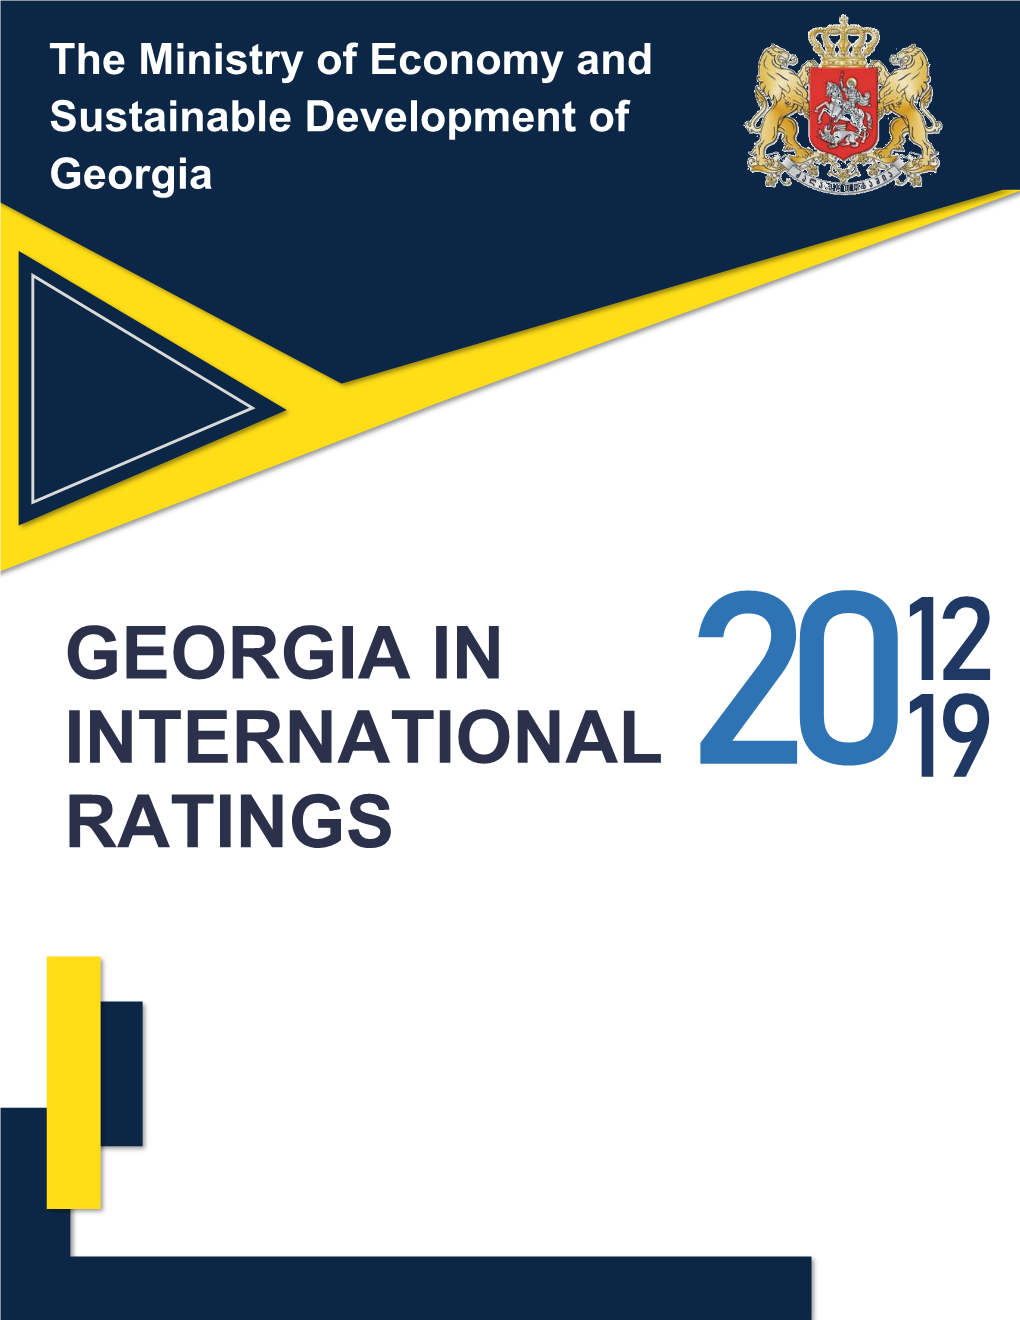 Georgia in International Ratings